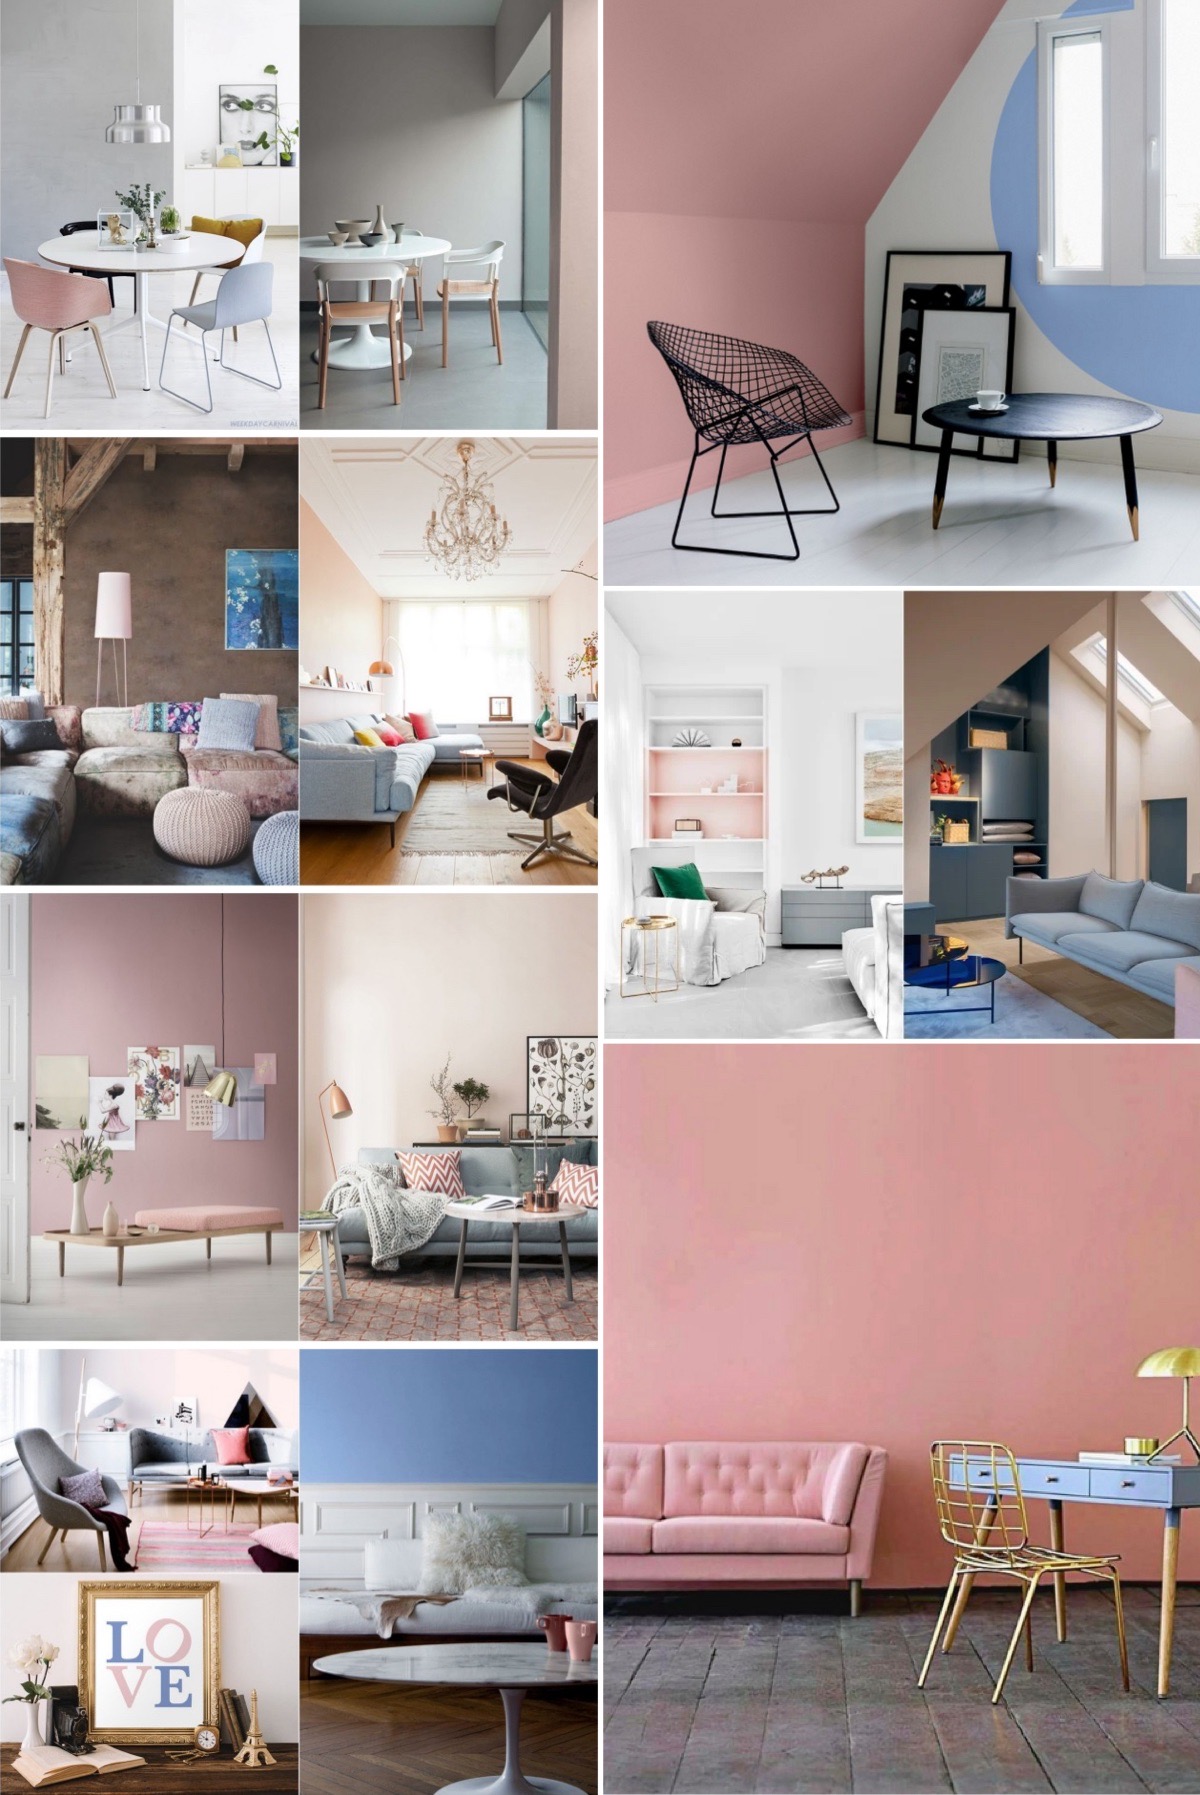 décoration pastel bleu rose salon - blog clem atc